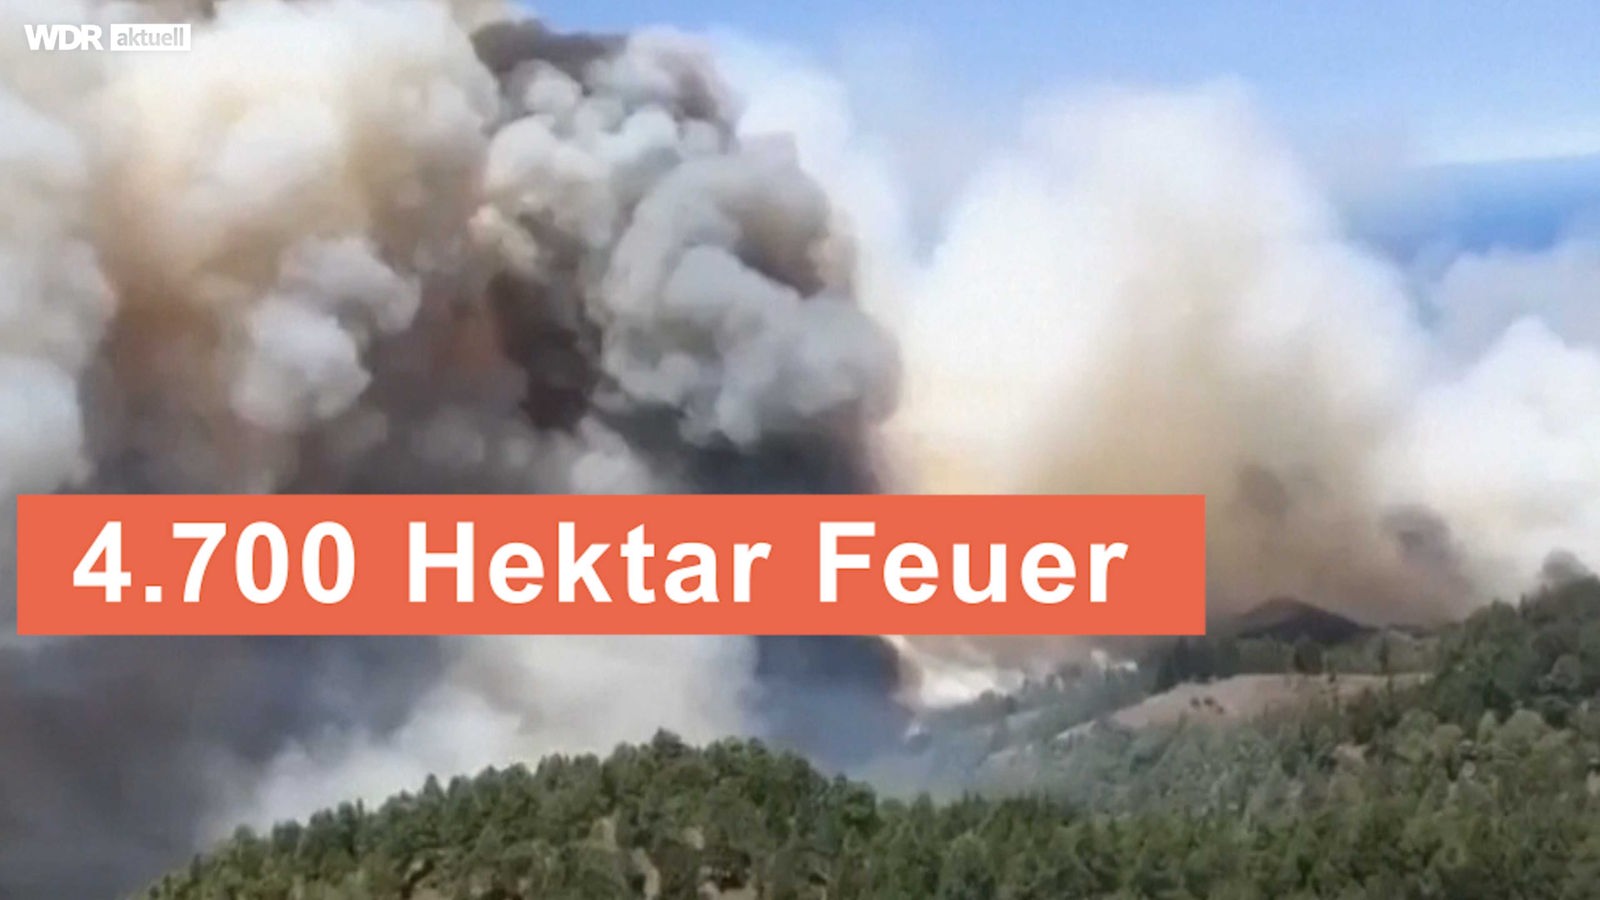 Ondata di caldo nell’Europa meridionale – gli incendi boschivi alla Palma contenuti – notizie – WDR – notizie